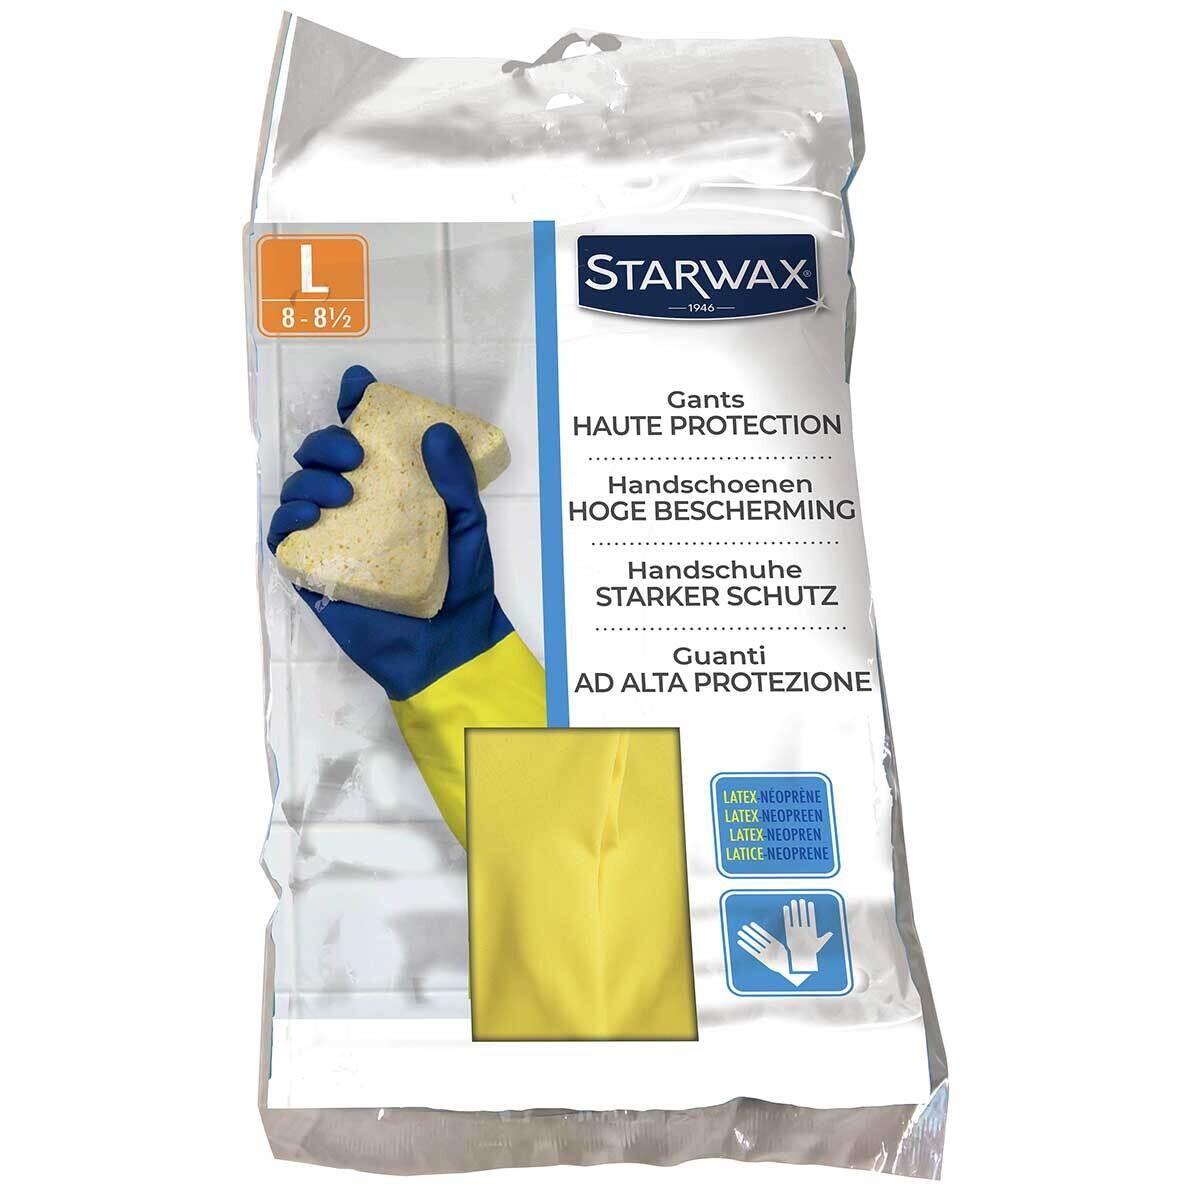 Starwax gants de ménage haute protection 'L' - 1 pair